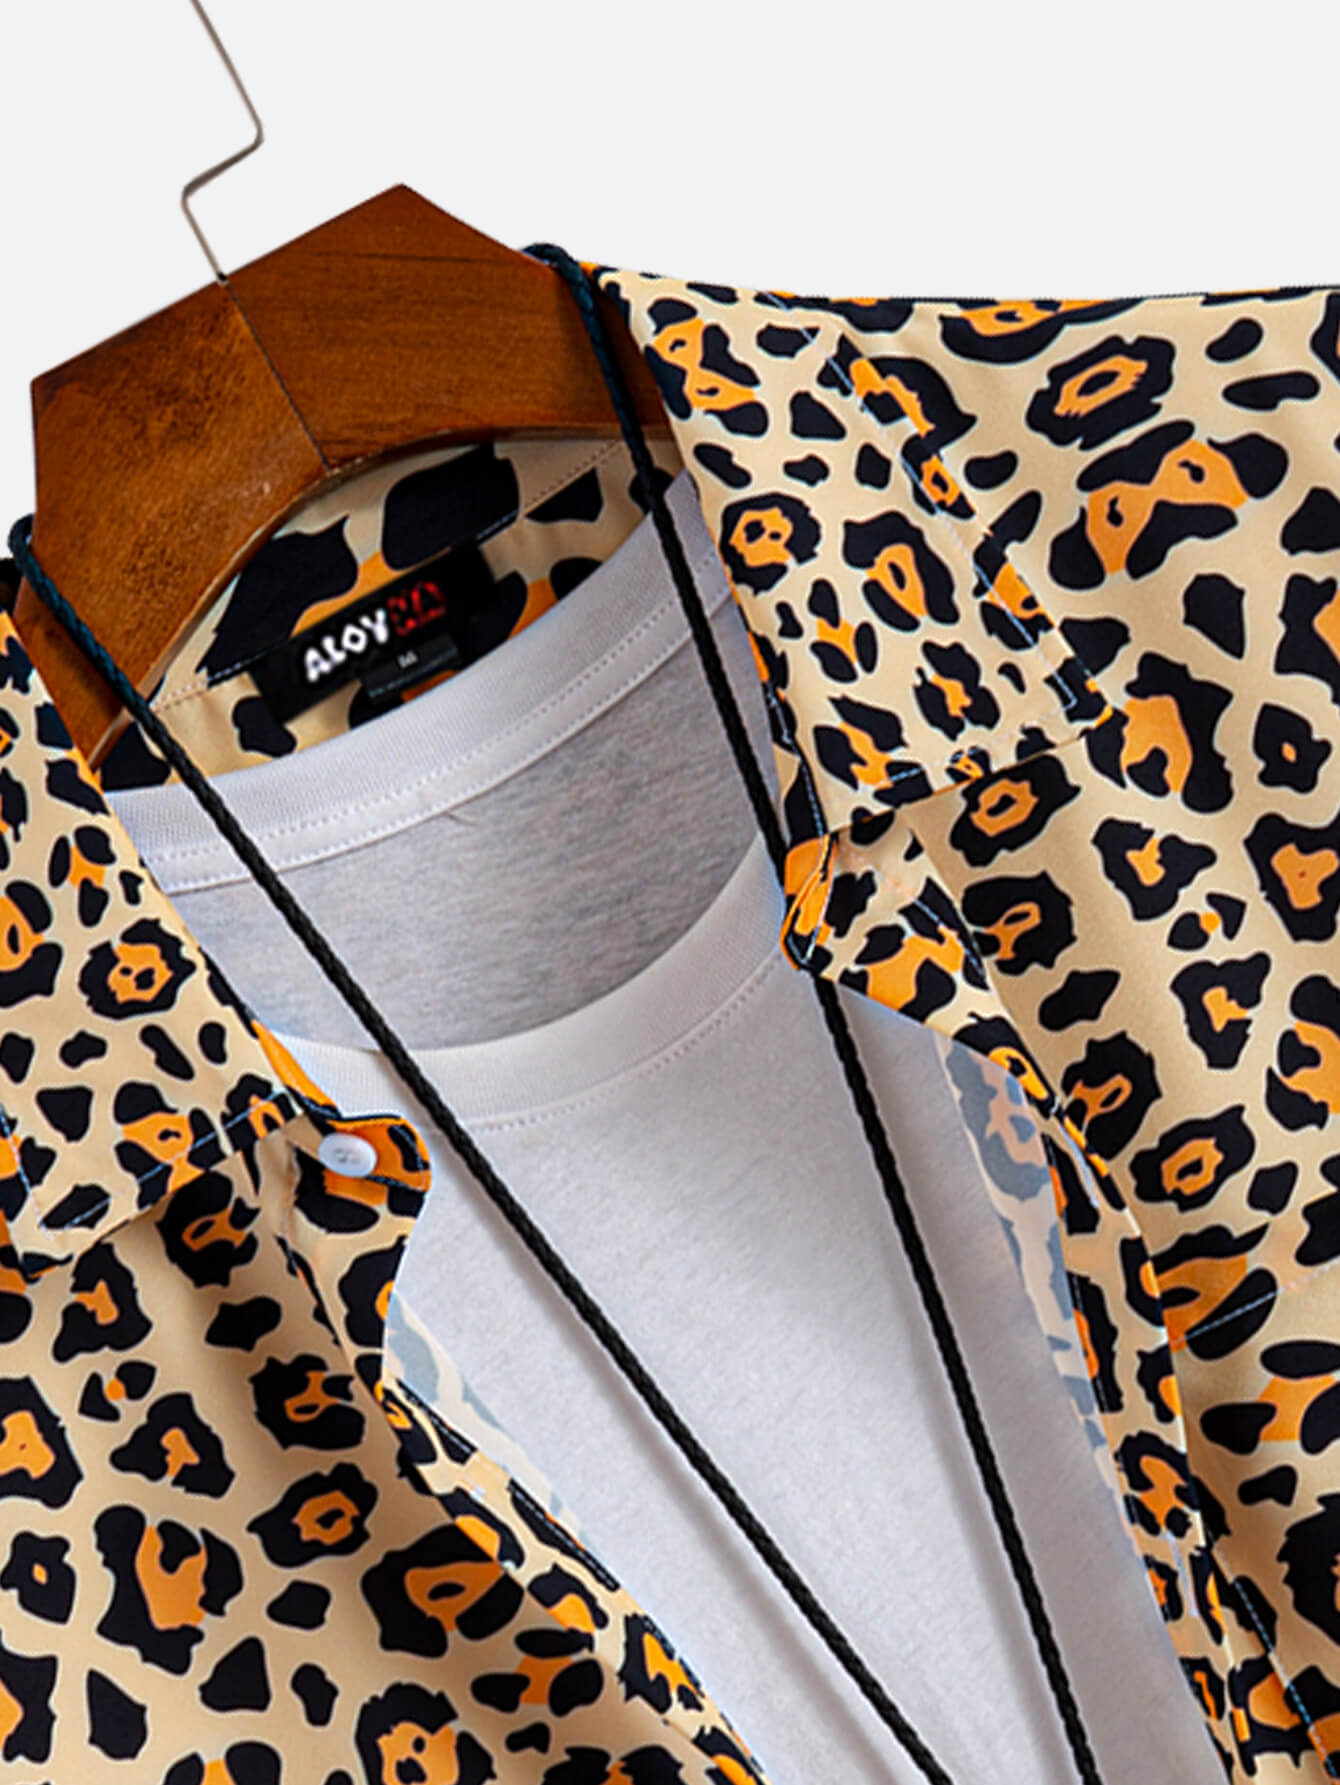 Men's Vintage Hawaiian Leopard Print Button Up Resort Shirt